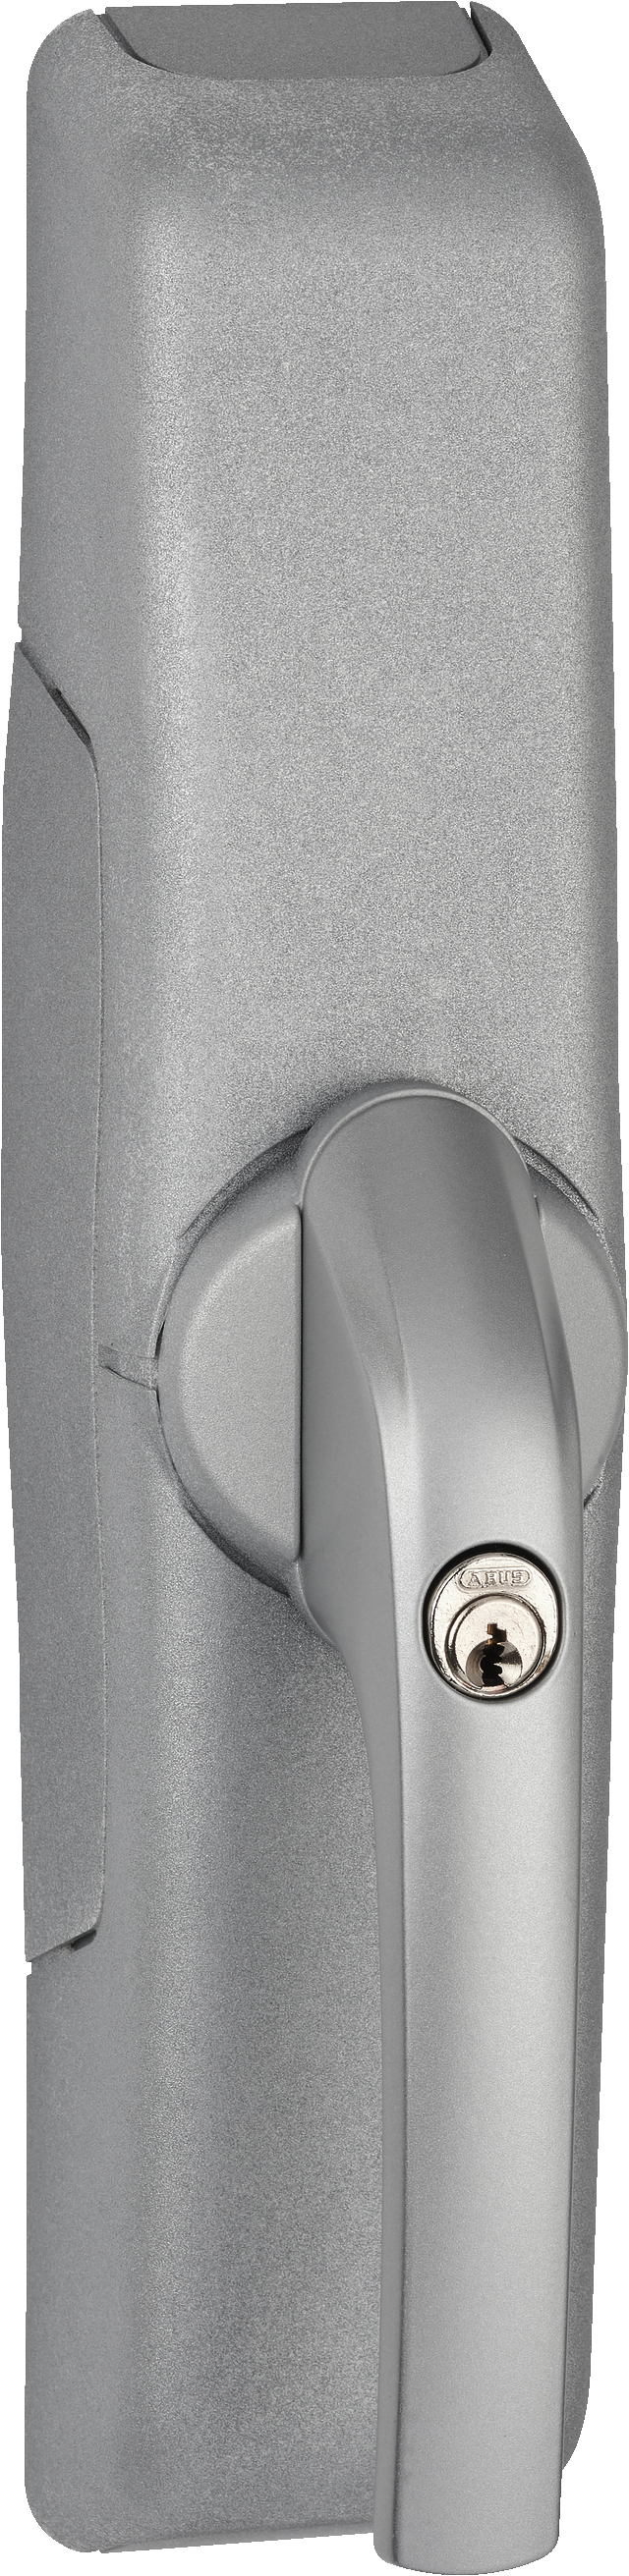 draadloze raamaandrijving HomeTec Pro FCA3000 zilver schuin vooraanzicht